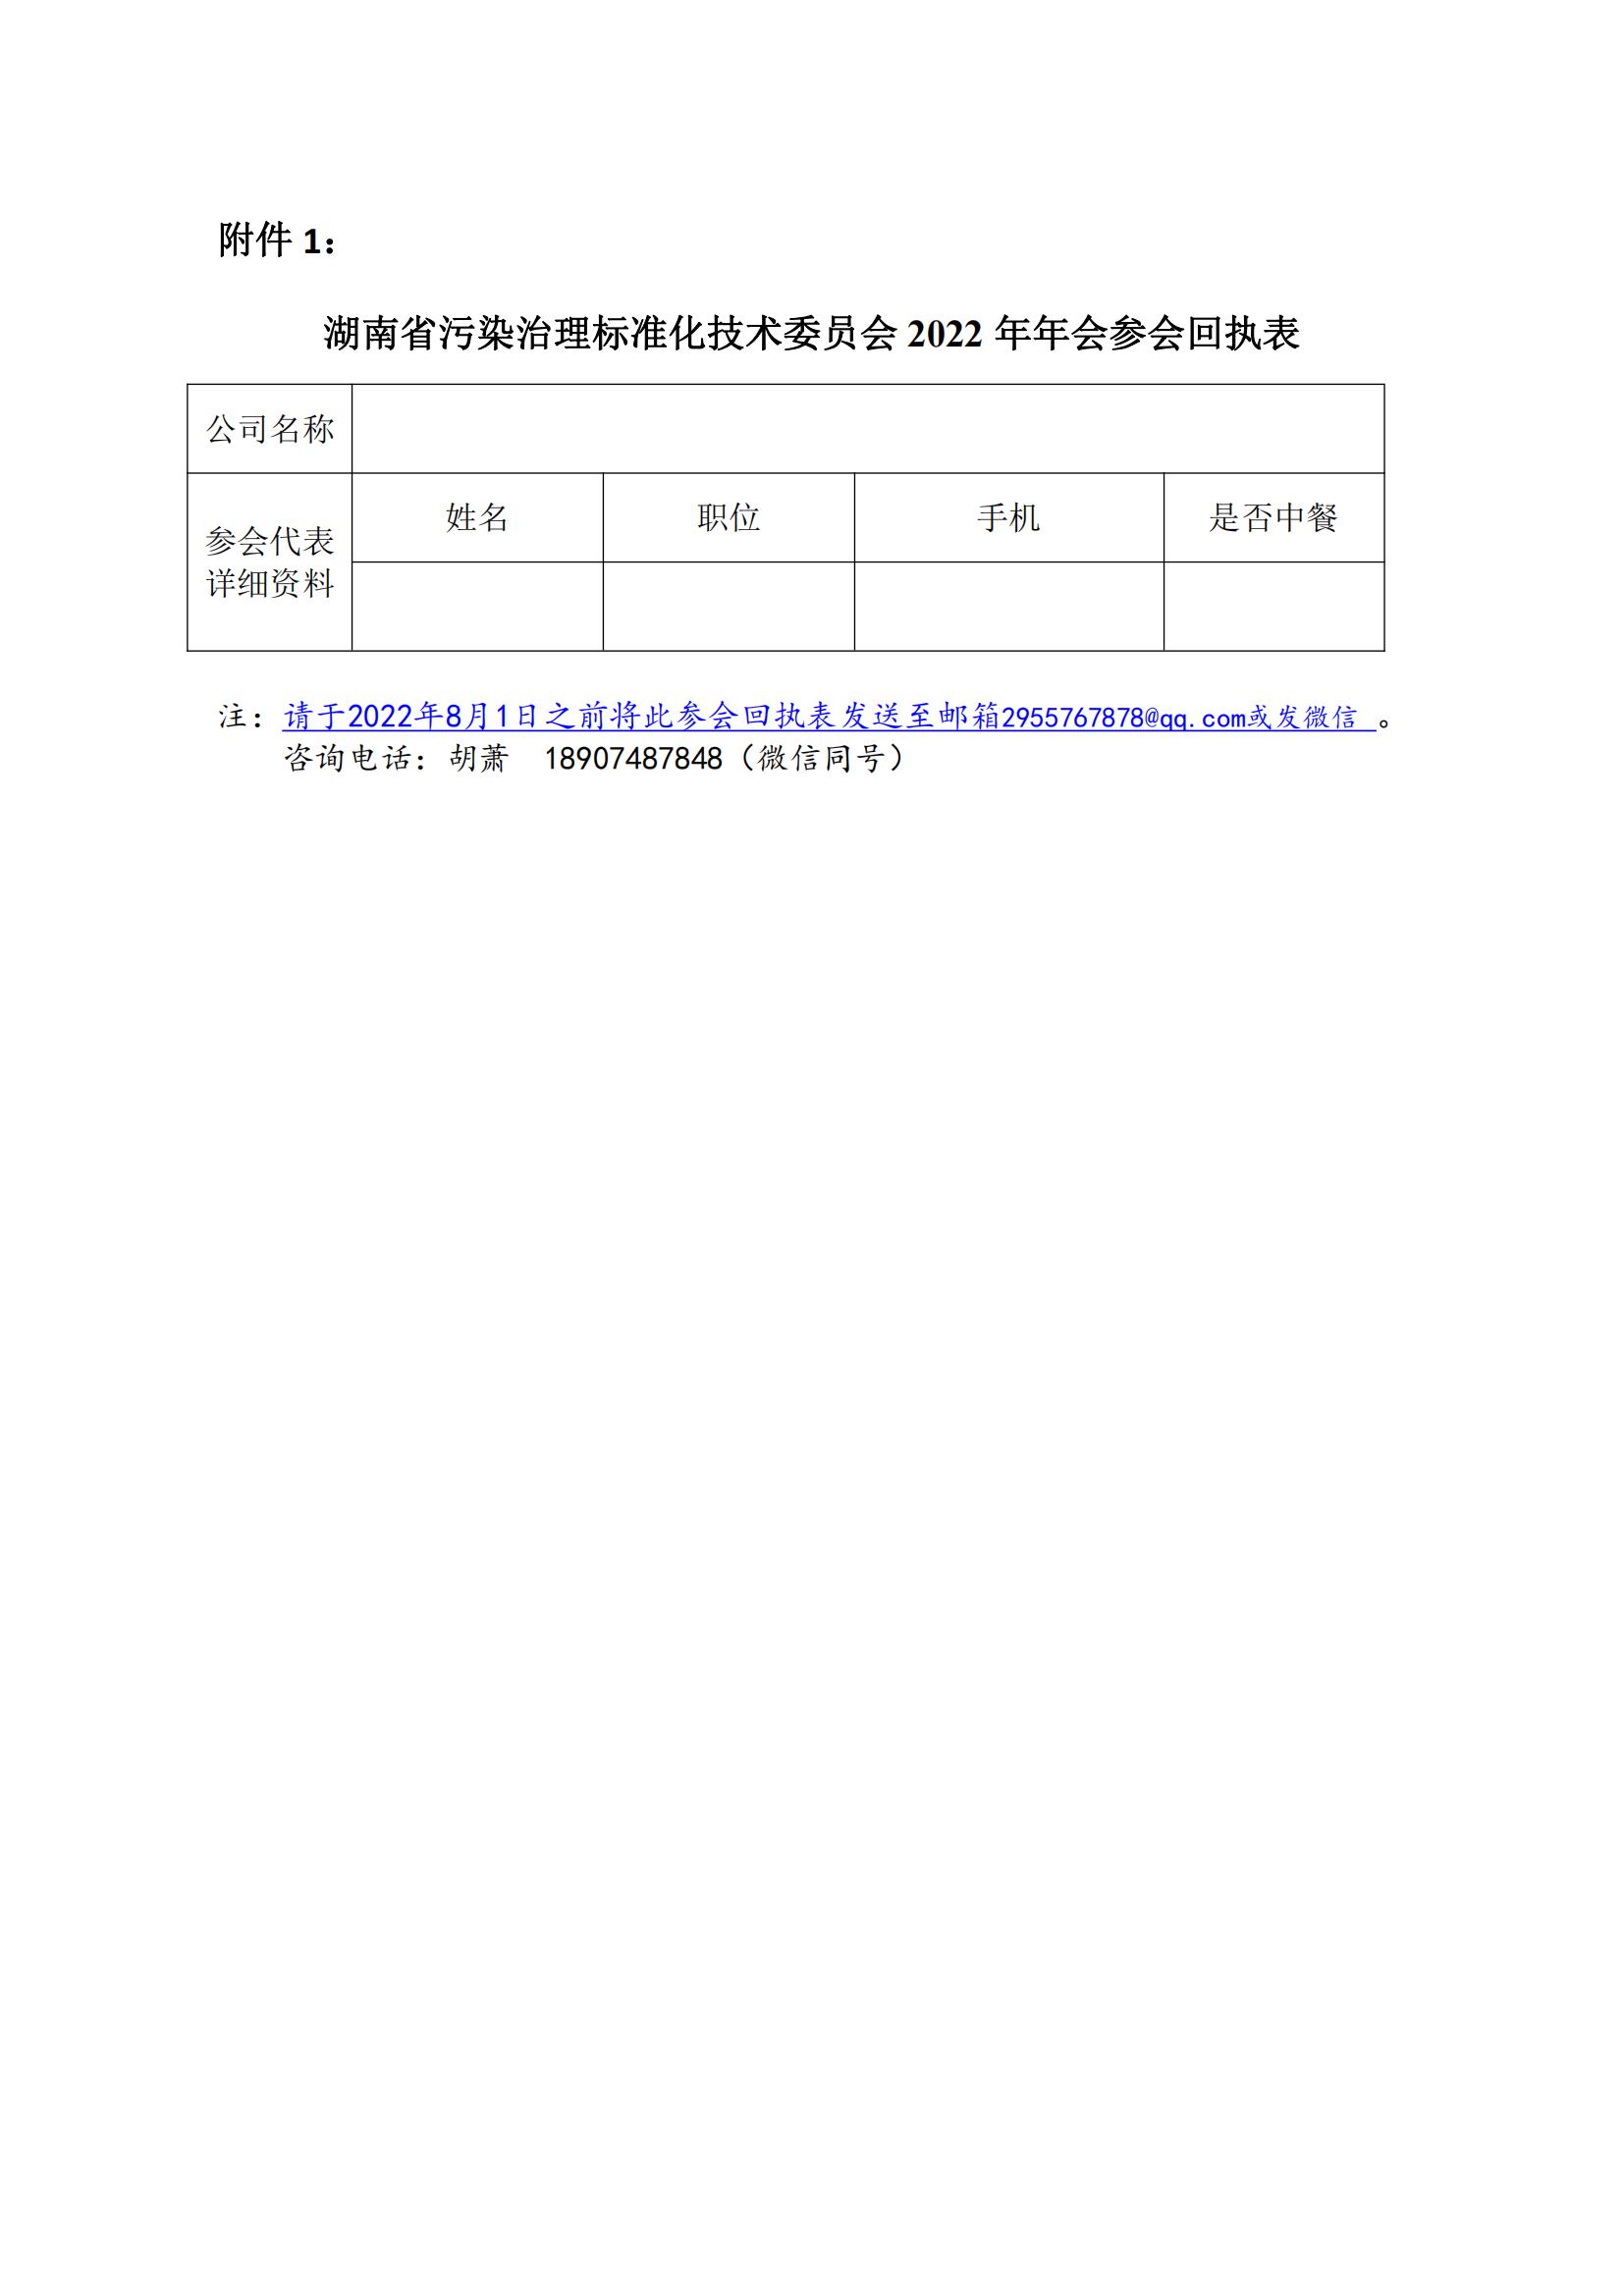 关于召开湖南省污染治理标准化技术委员会2022年年会的通知_01.jpg